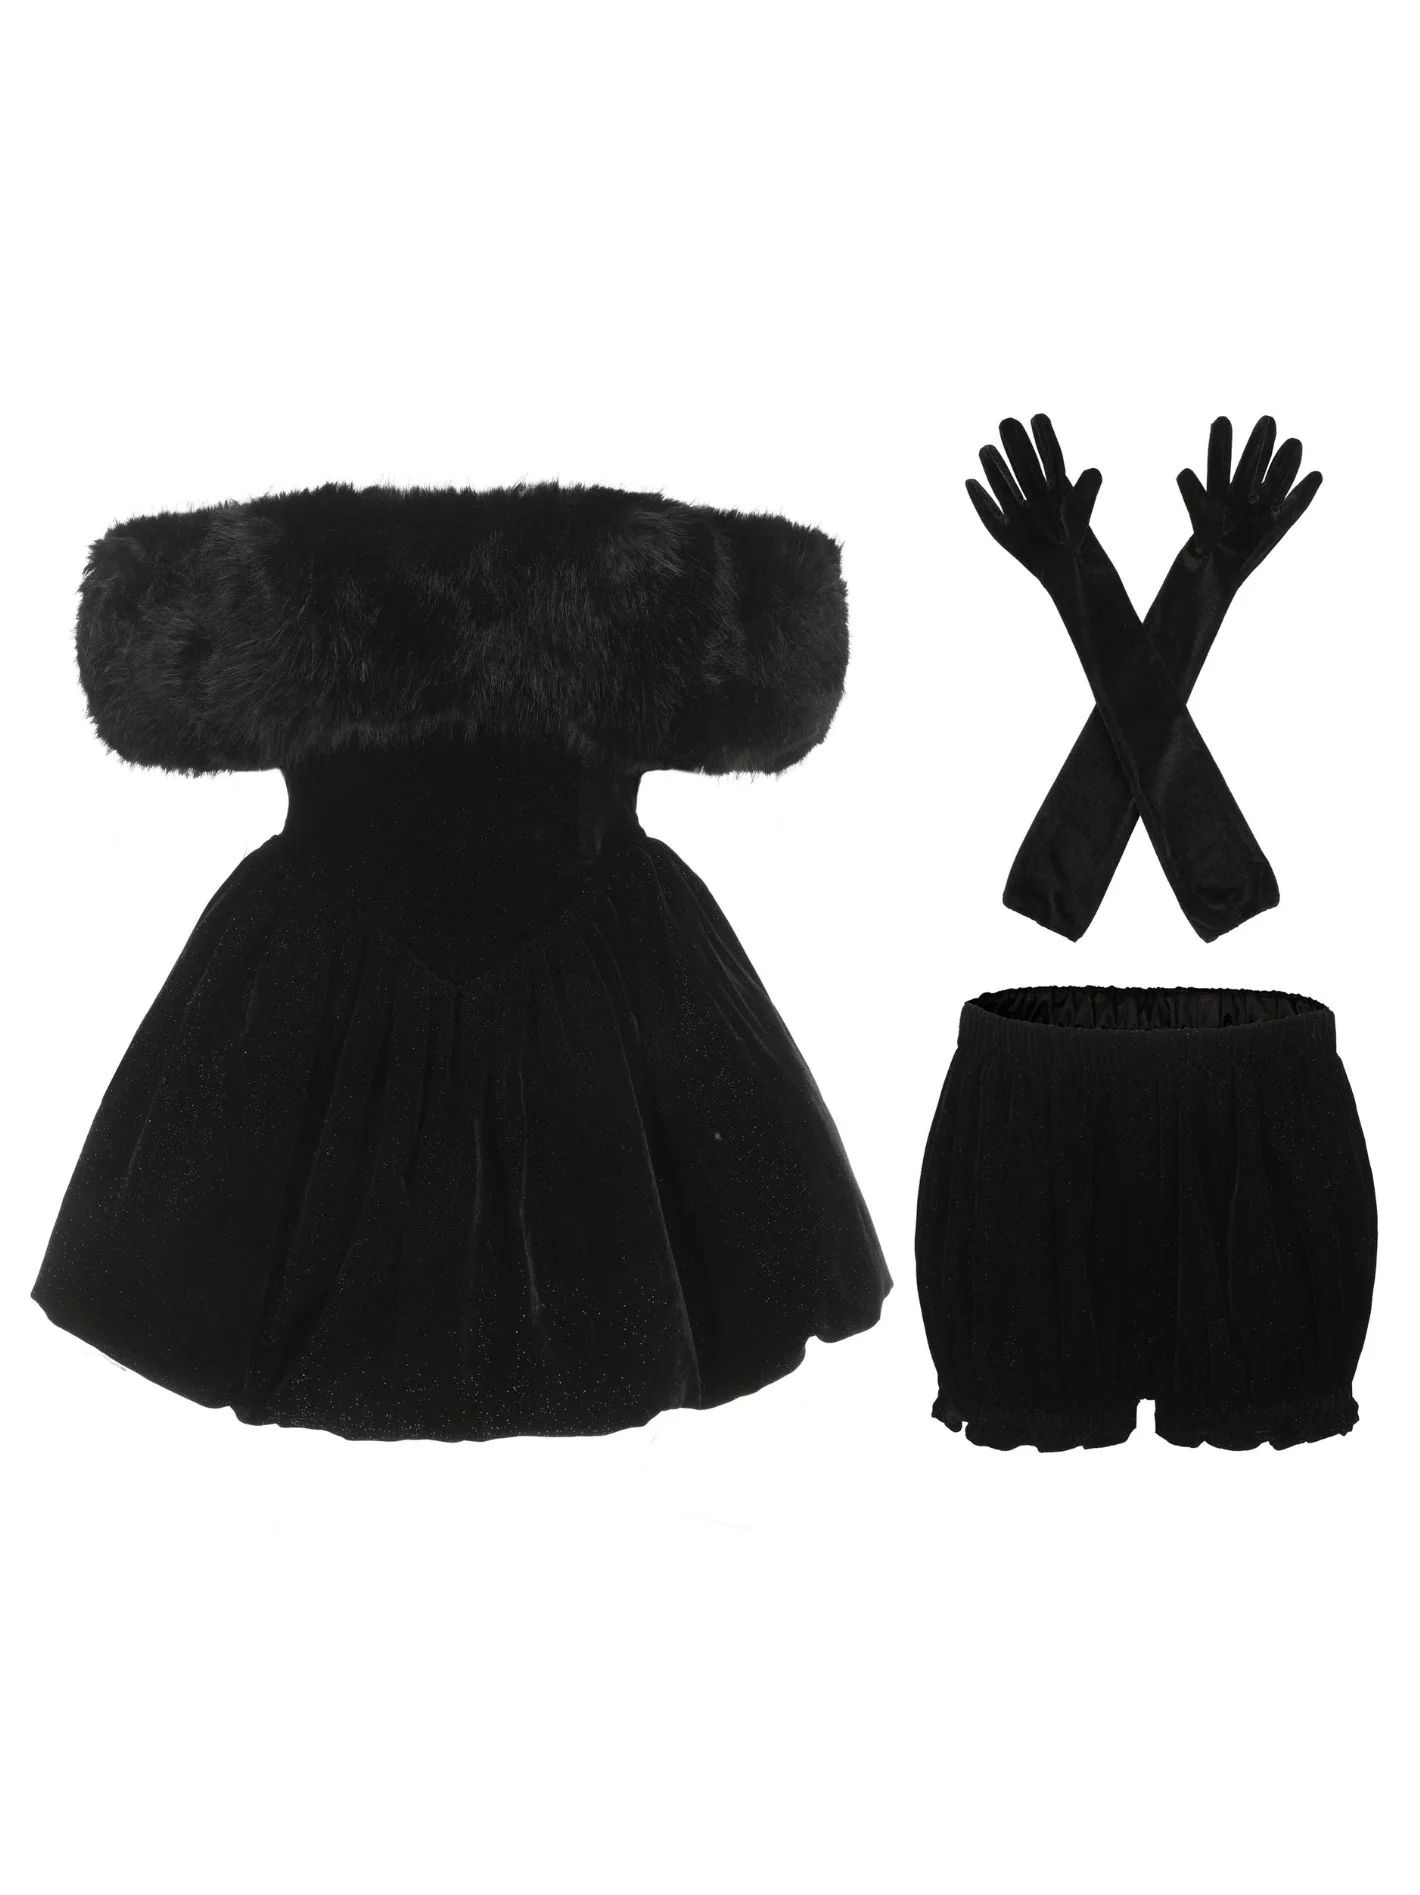 Candice Velvet Dress (Black) | Nana Jacqueline